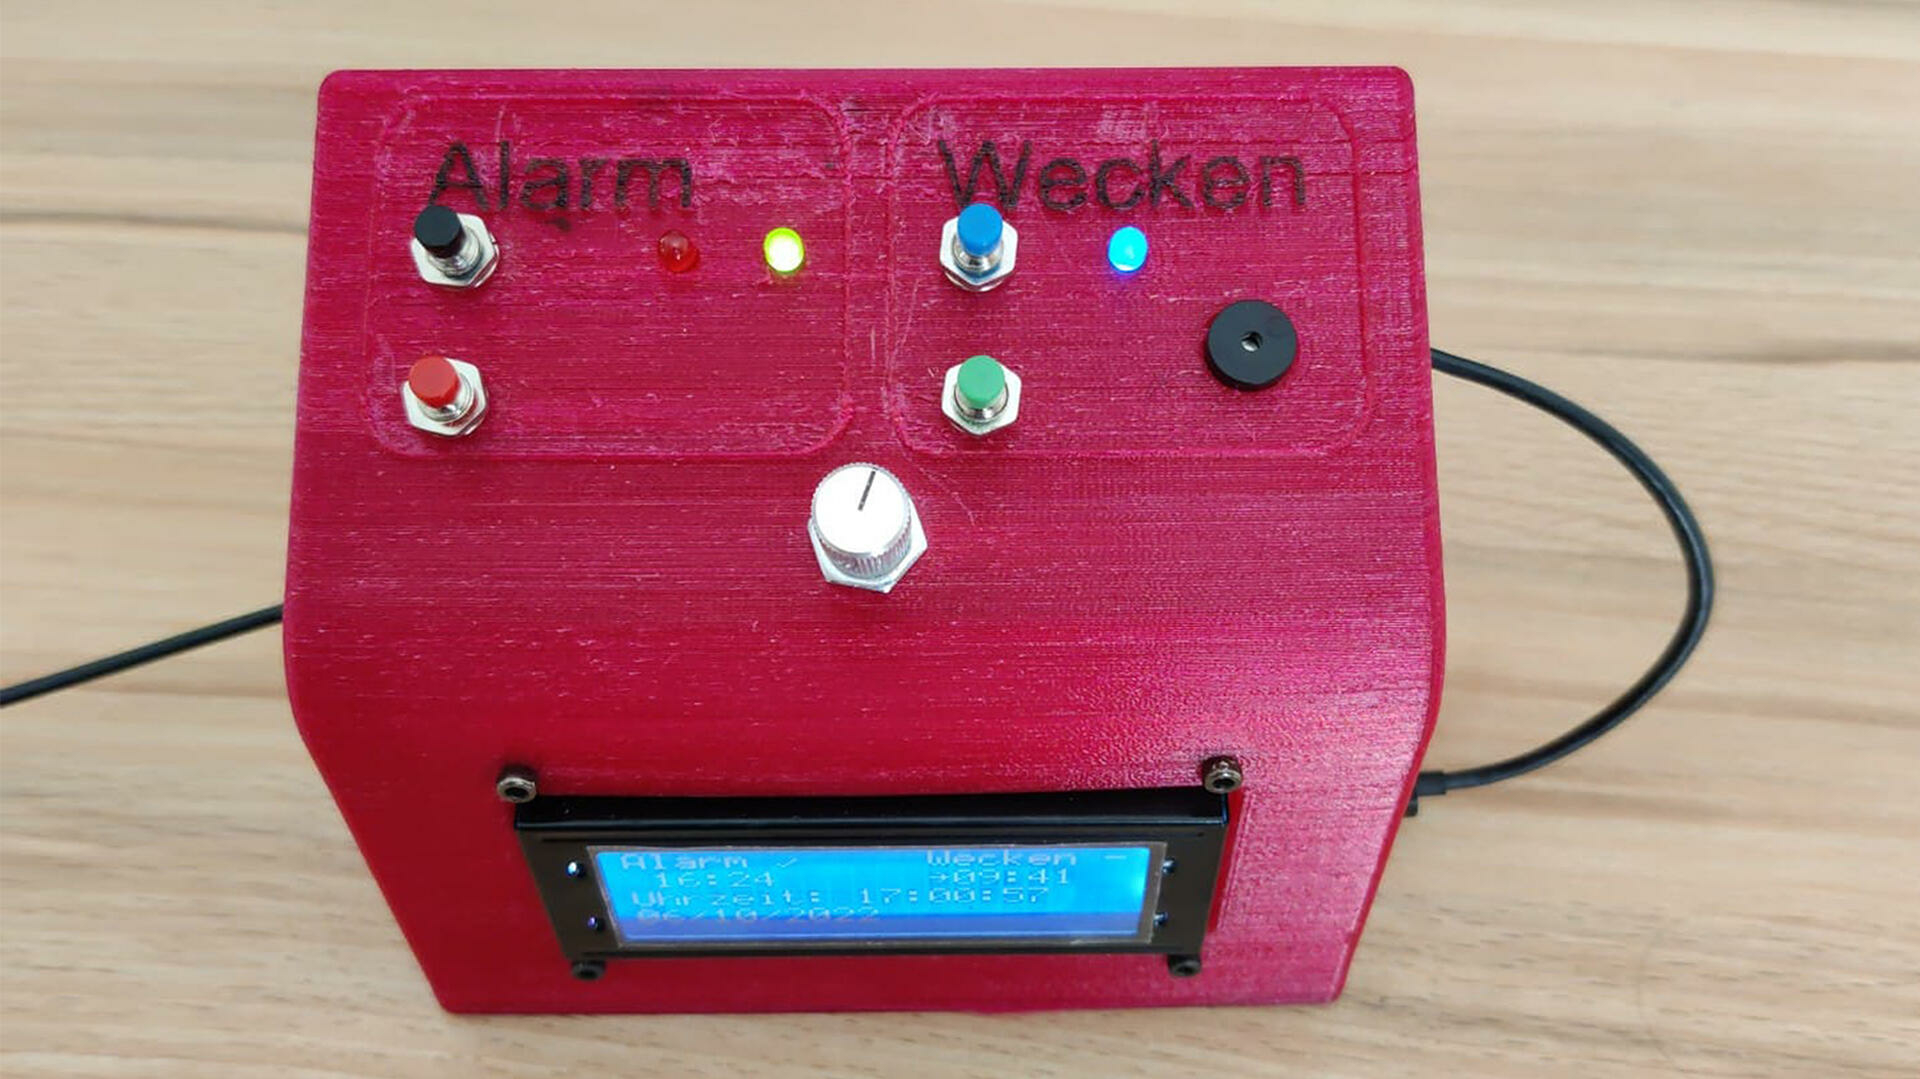 Hilfe per Knopfdruck: Notrufwecker mit ESP32 bauen | heise online